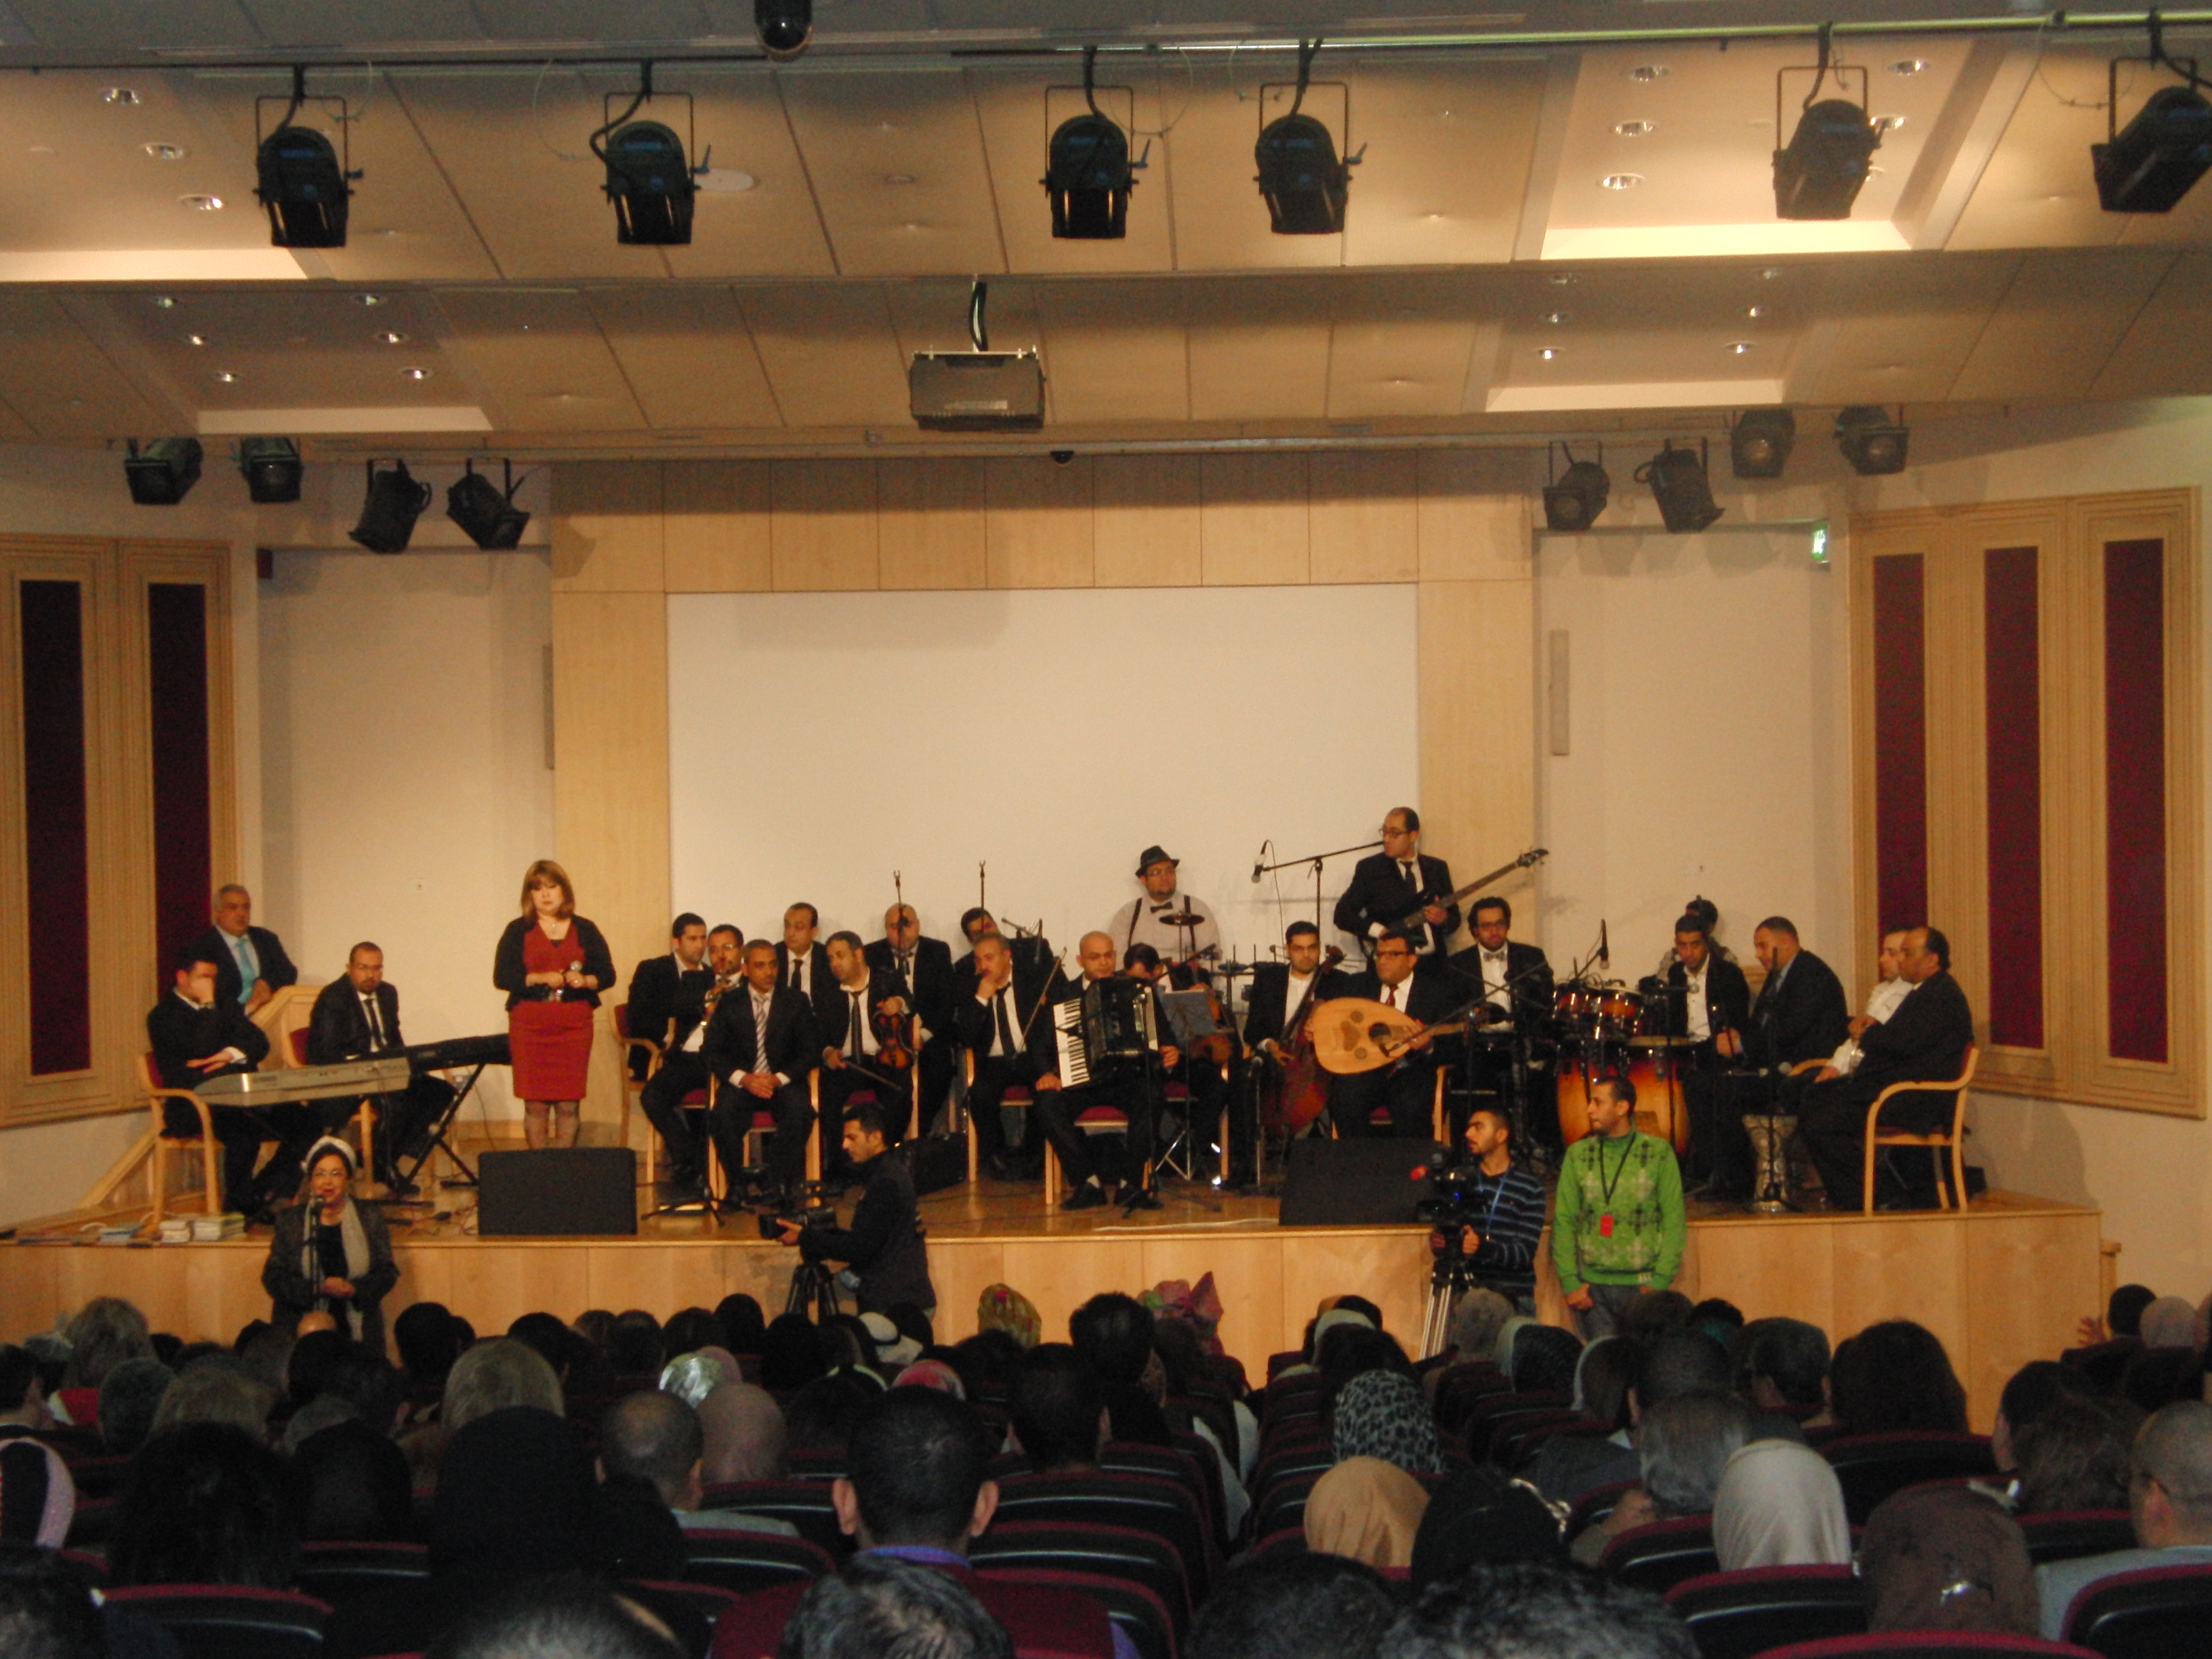 2014-2-12 حفل جمعية احباء مصر برعاية السفارة المصرية